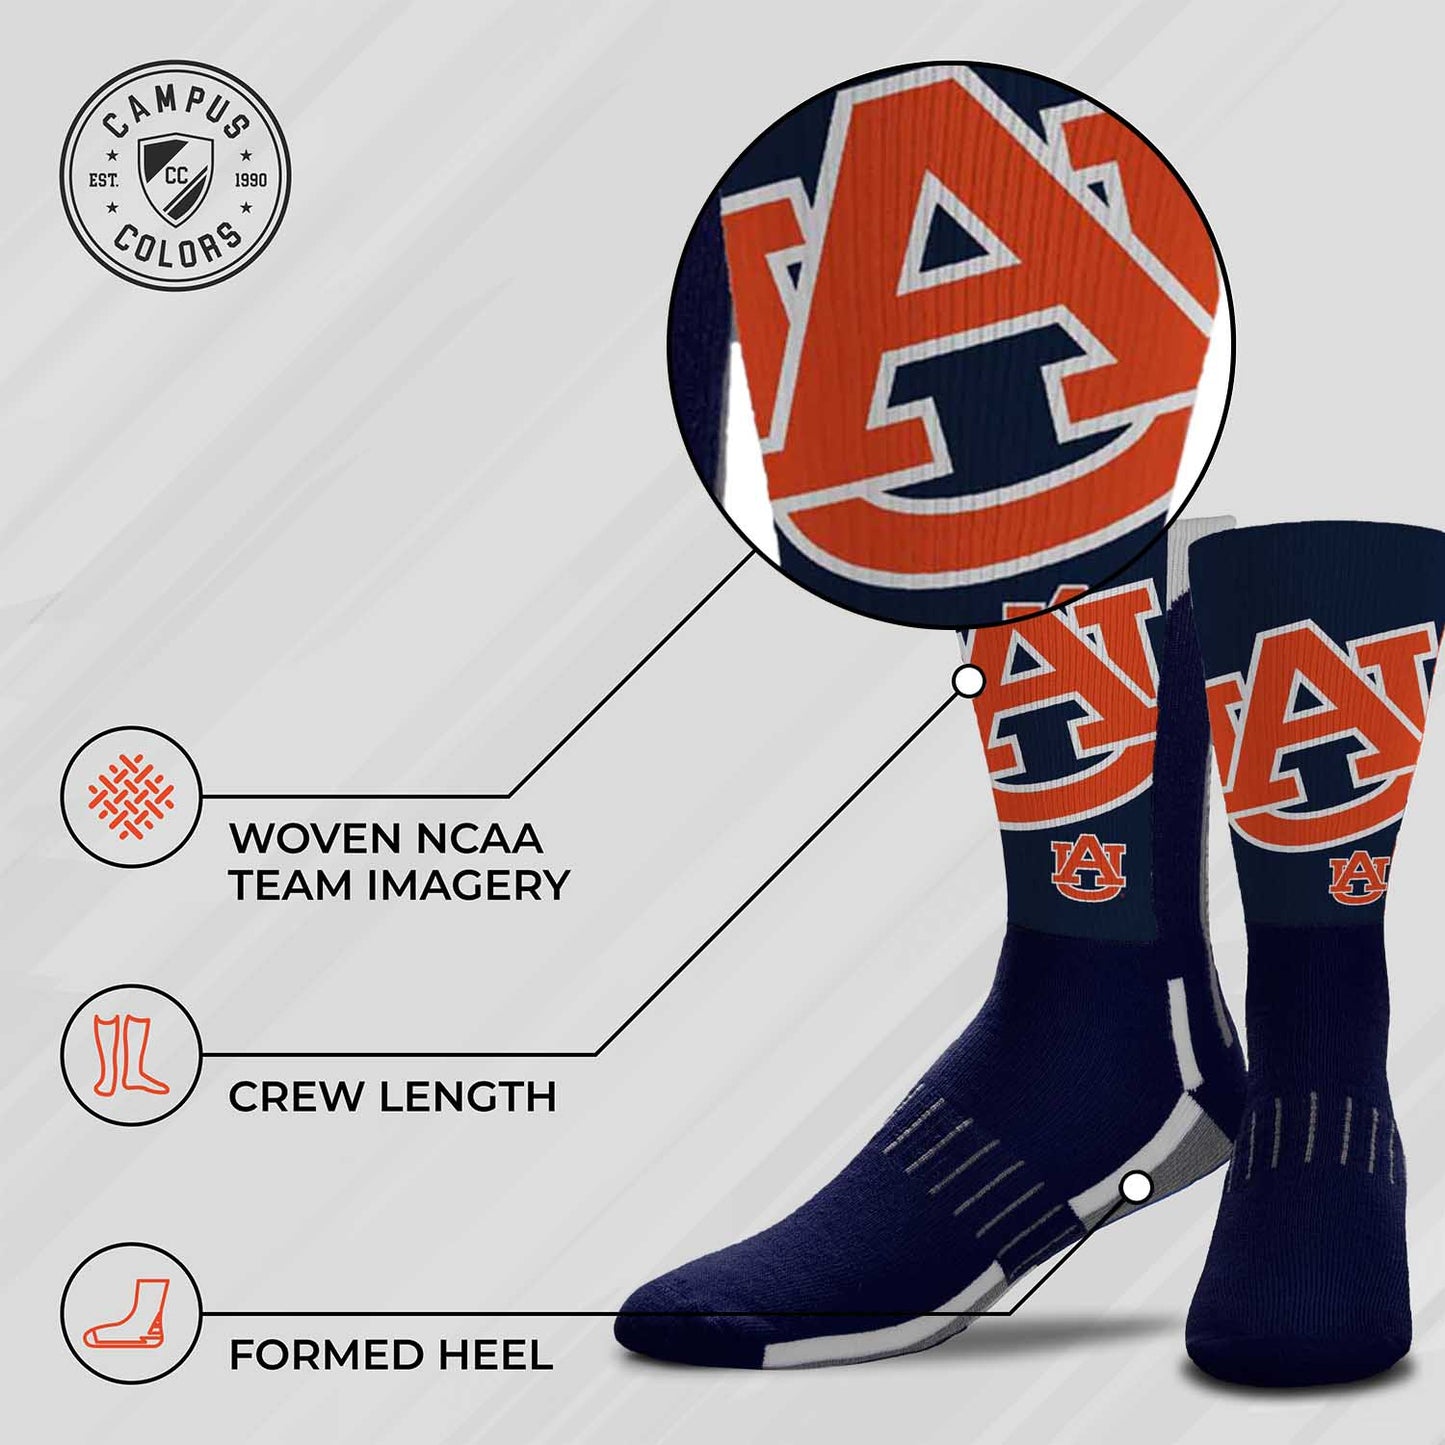 Auburn Tigers NCAA Youth University Socks - Team Color